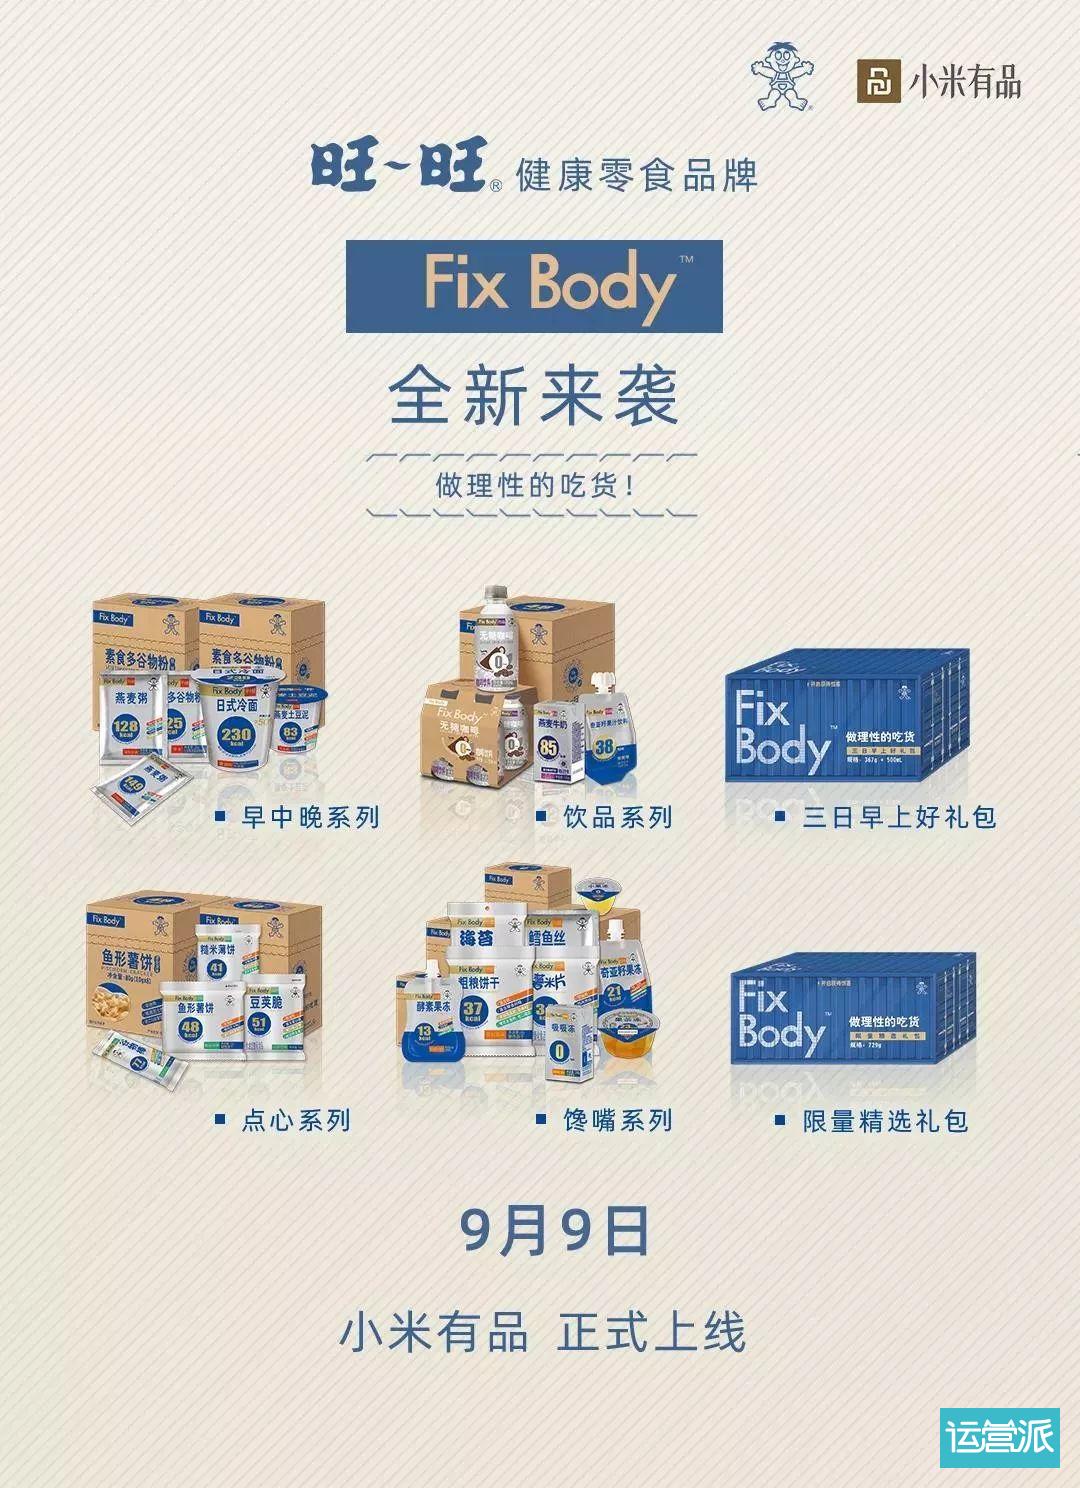 旺旺变“健康”了，全新子品牌“Fix Body”上线！